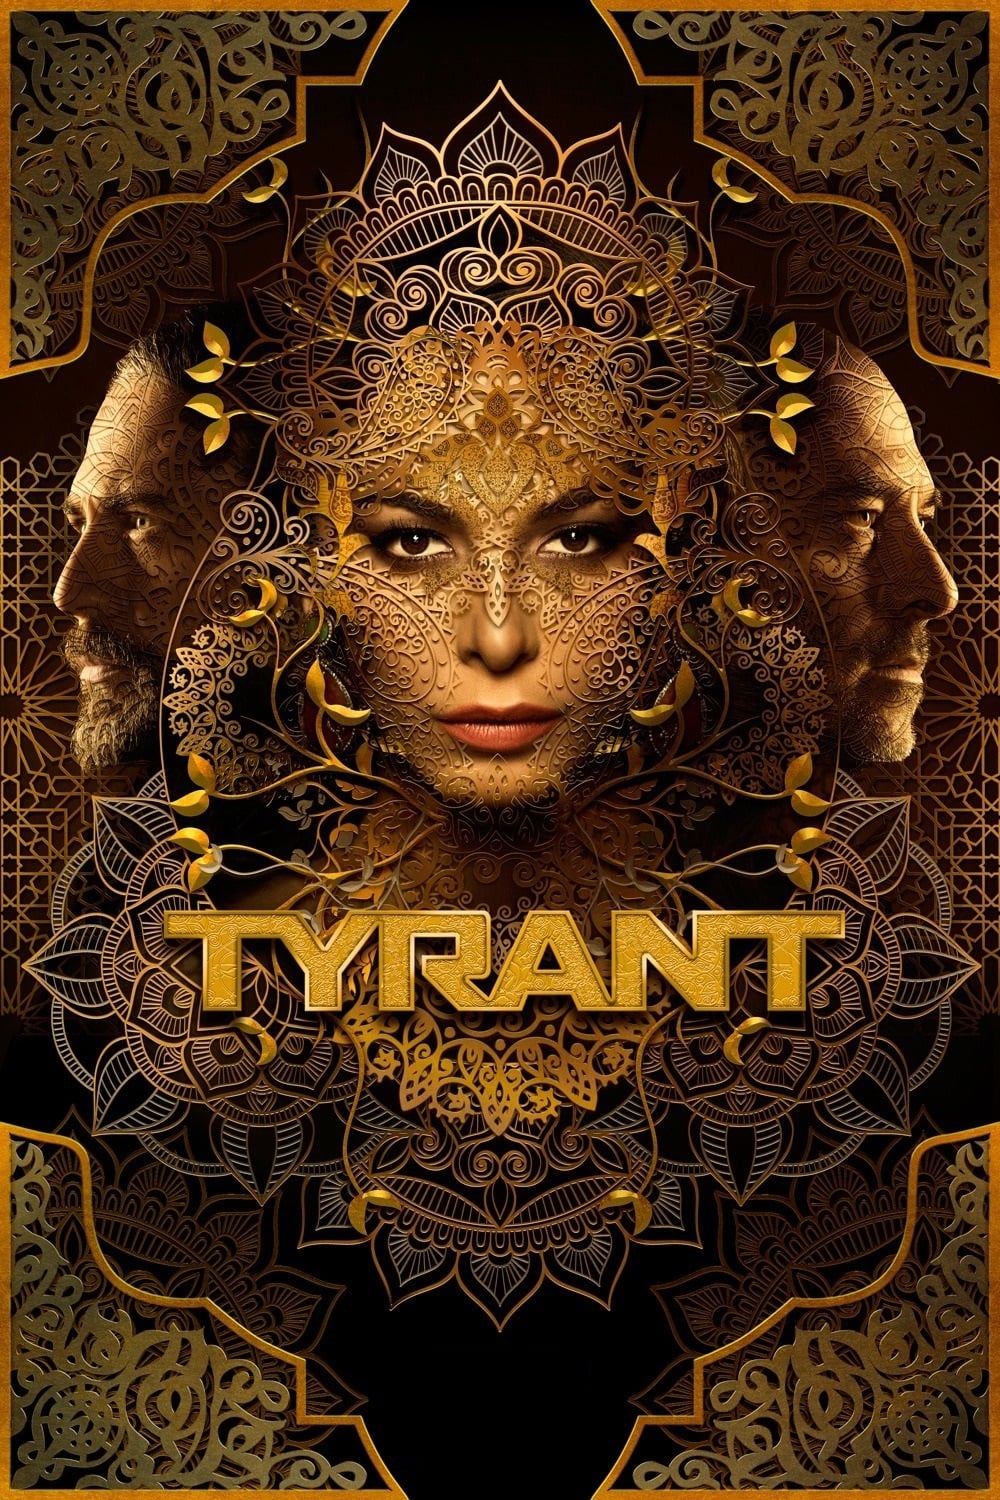 Caratula de Tyrant (Tyrant) 